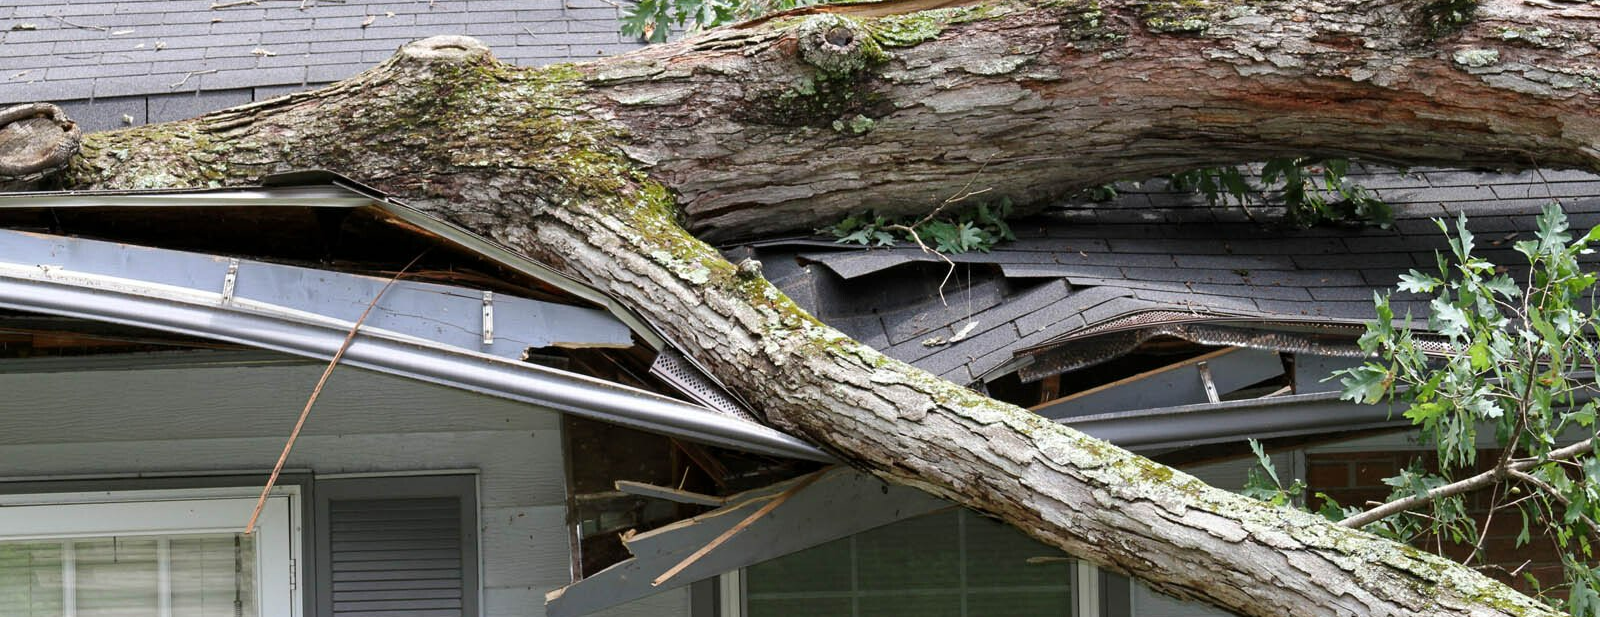 Arbre qui est tombé sur la toiture d'une maison après une tempête